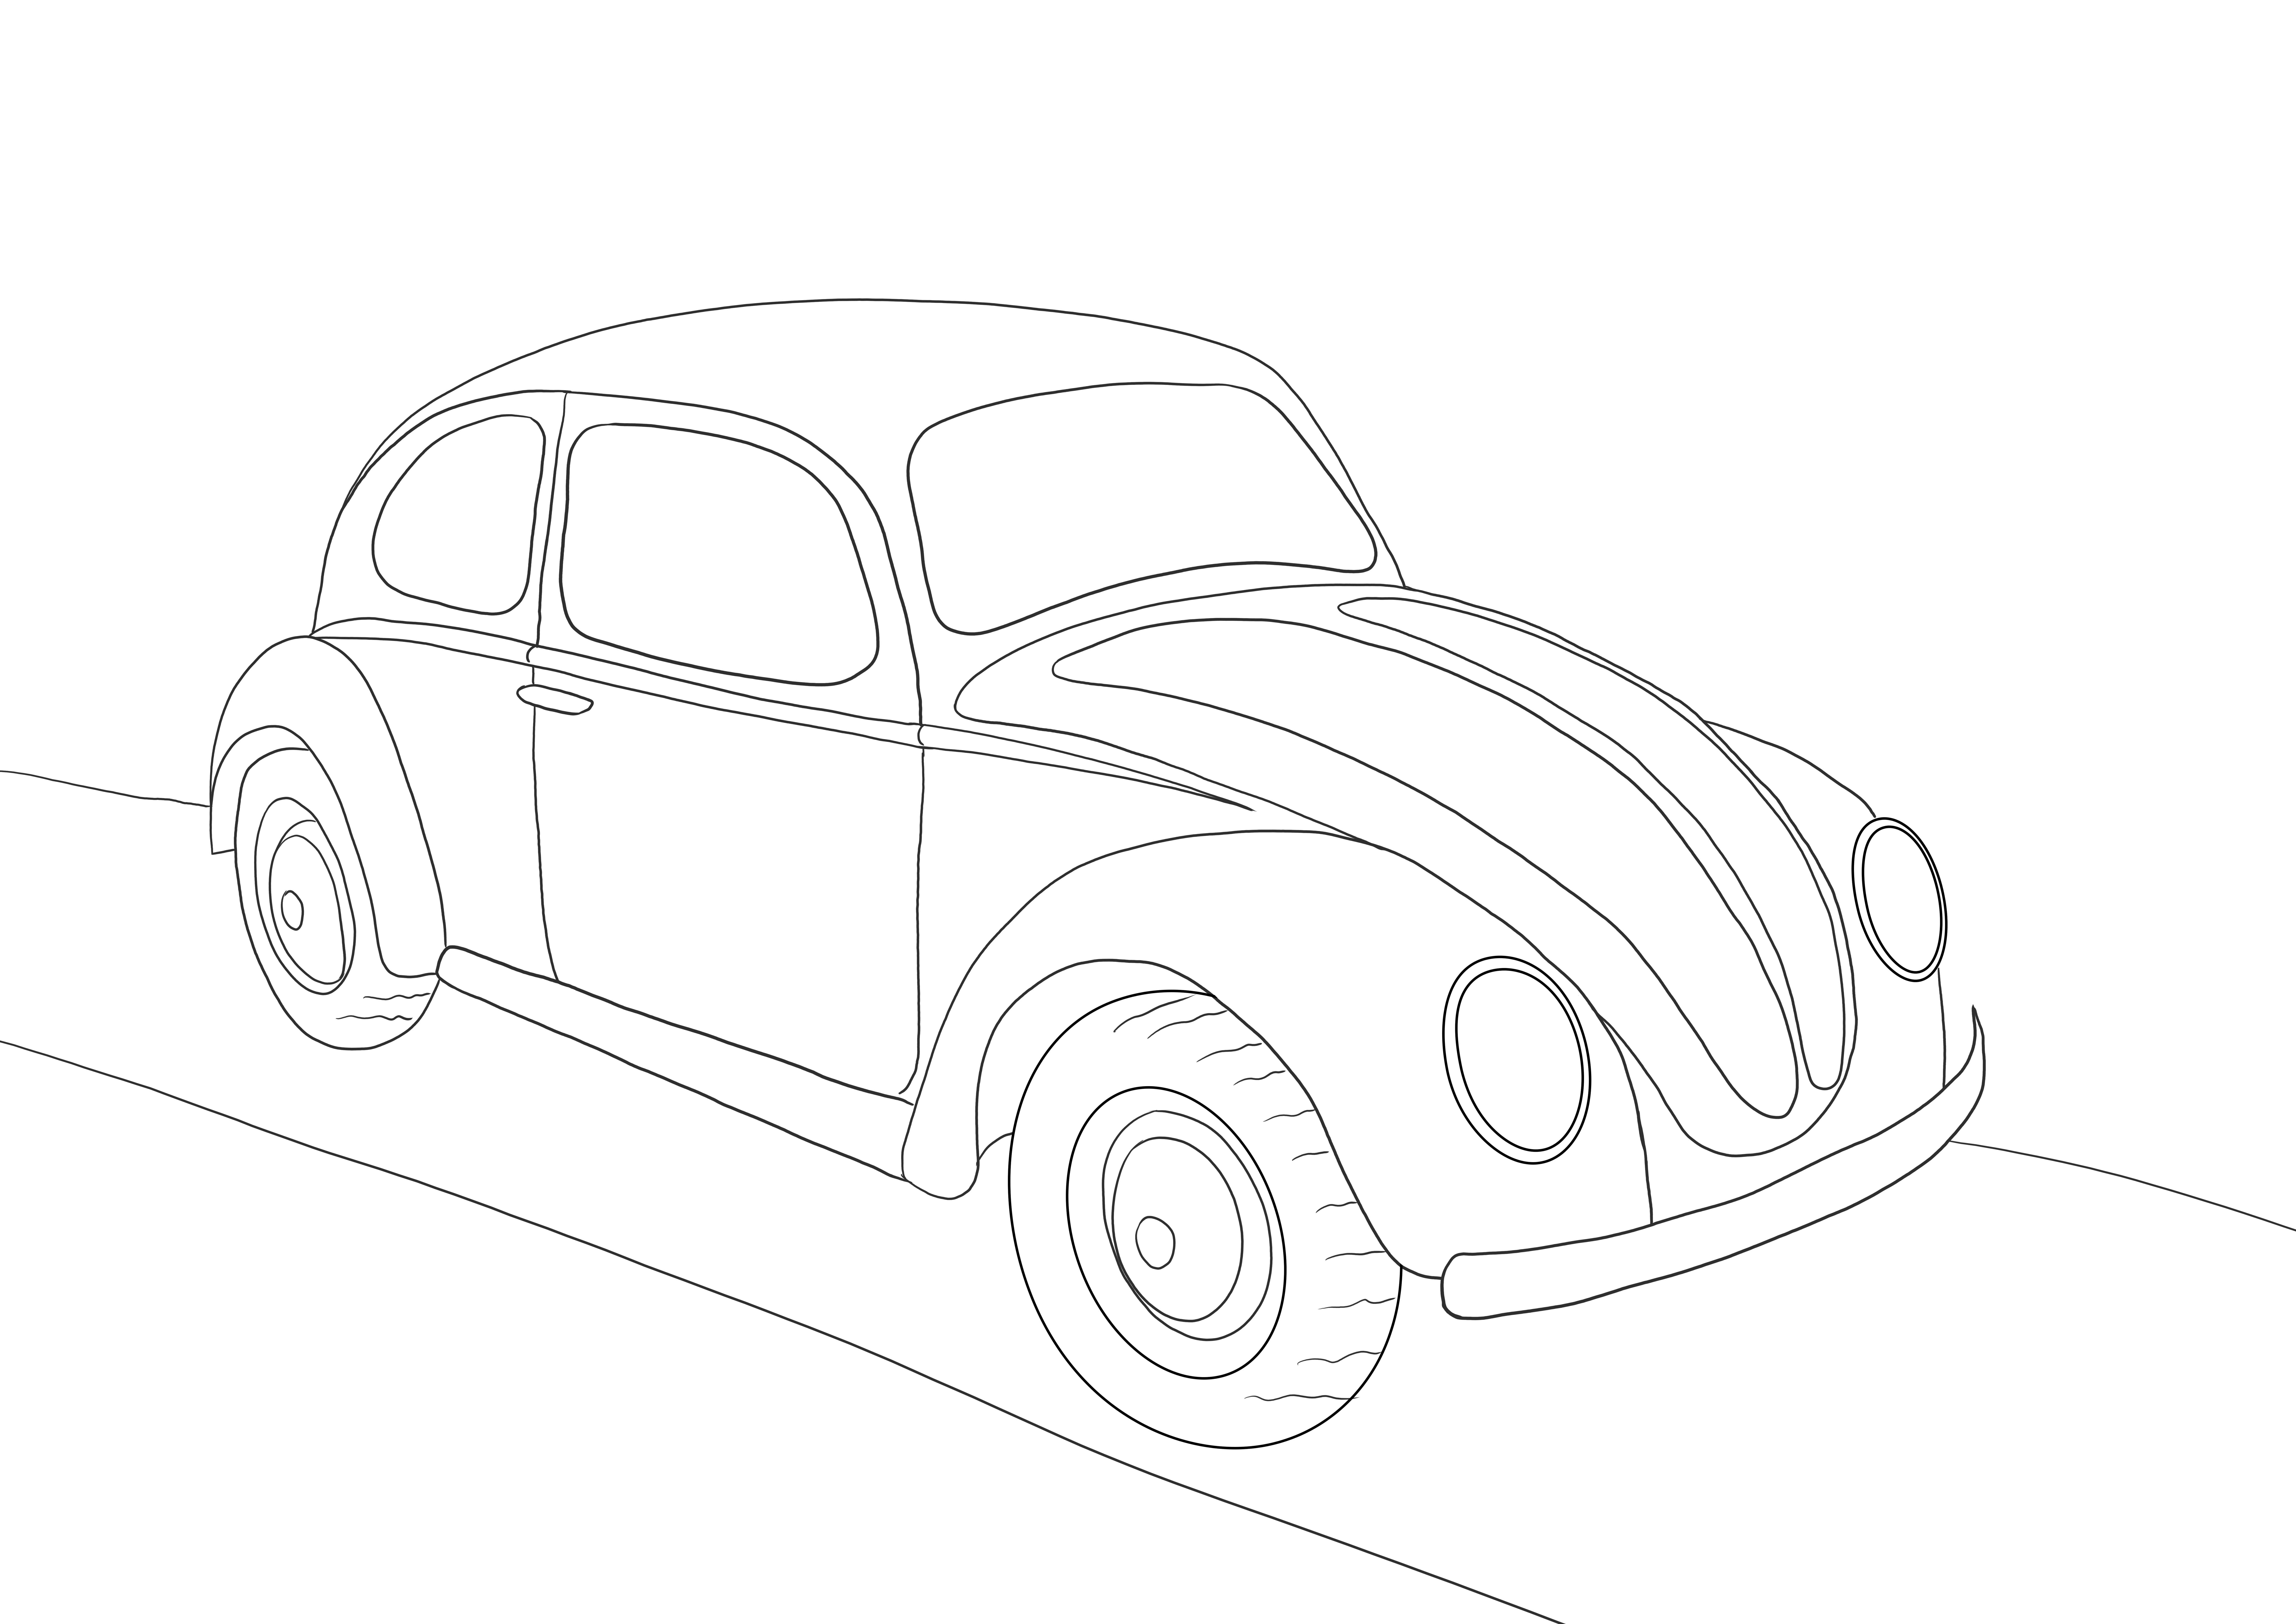 Volkswagen Beetle kostenlos ausdruckbar zum Ausmalen oder Speichern für späteres Bild